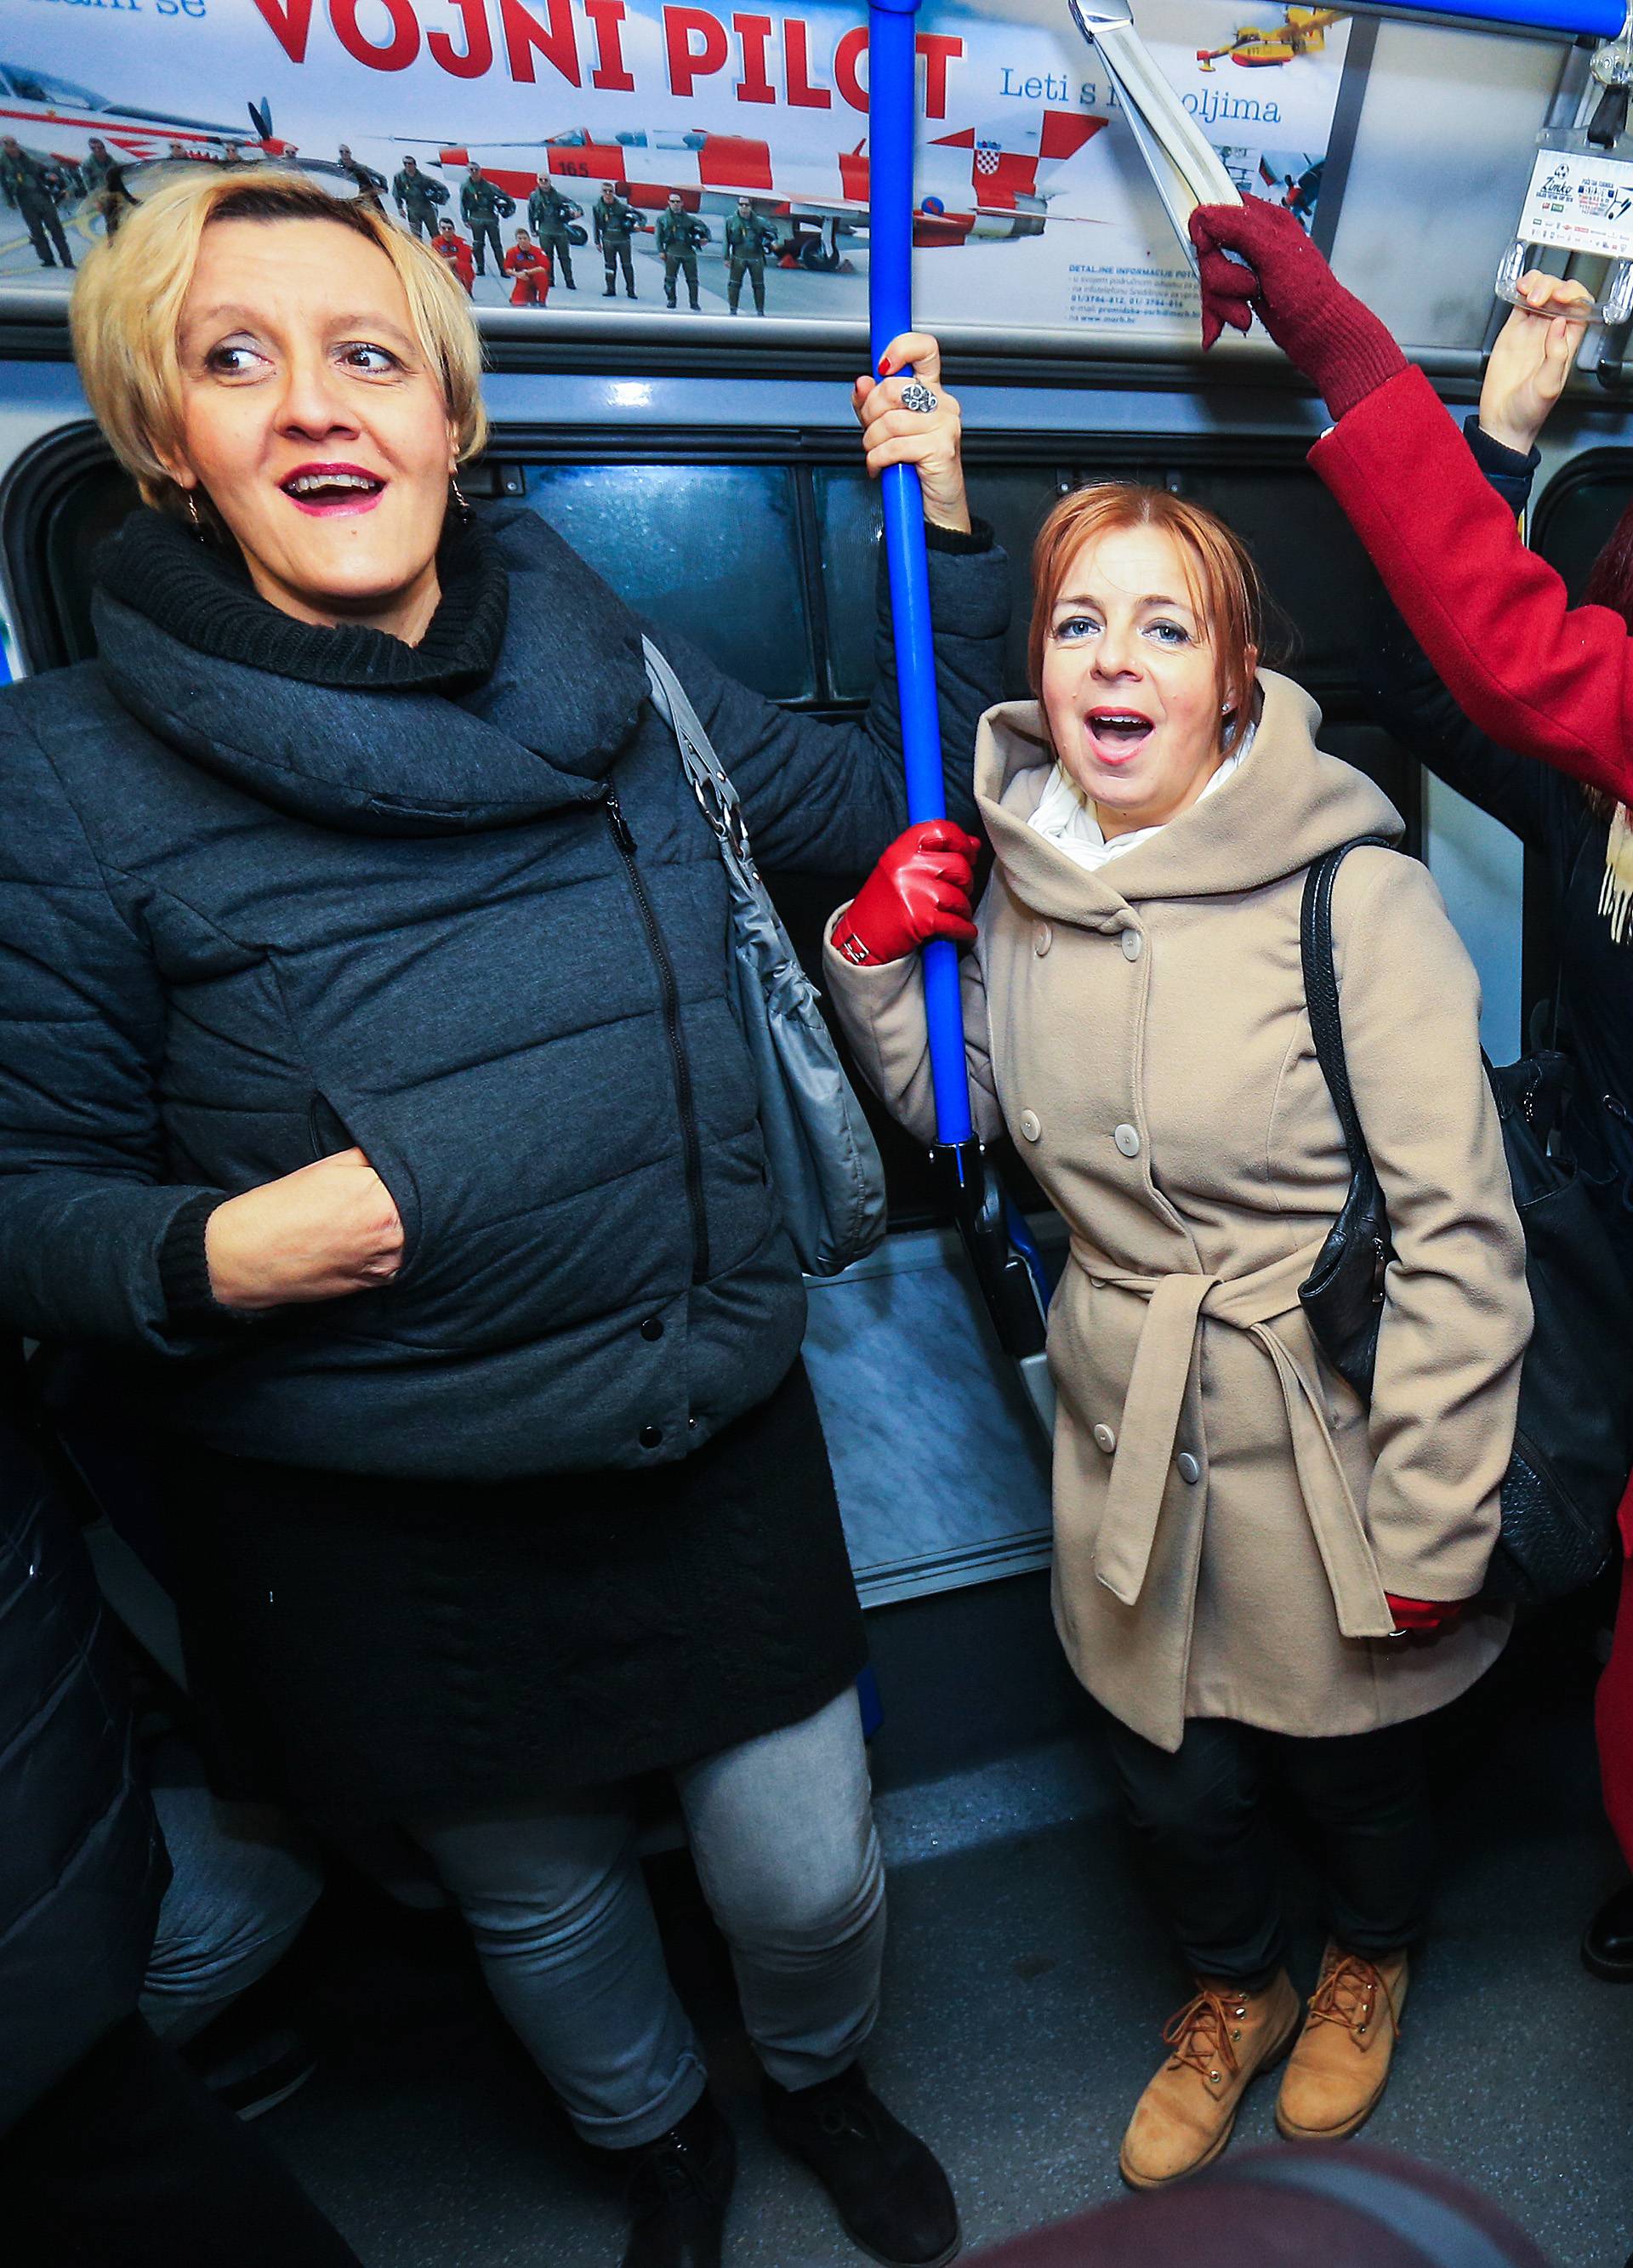 Zbor Lipa iznenadio Osječane, u tramvaju im zapjevali hitove